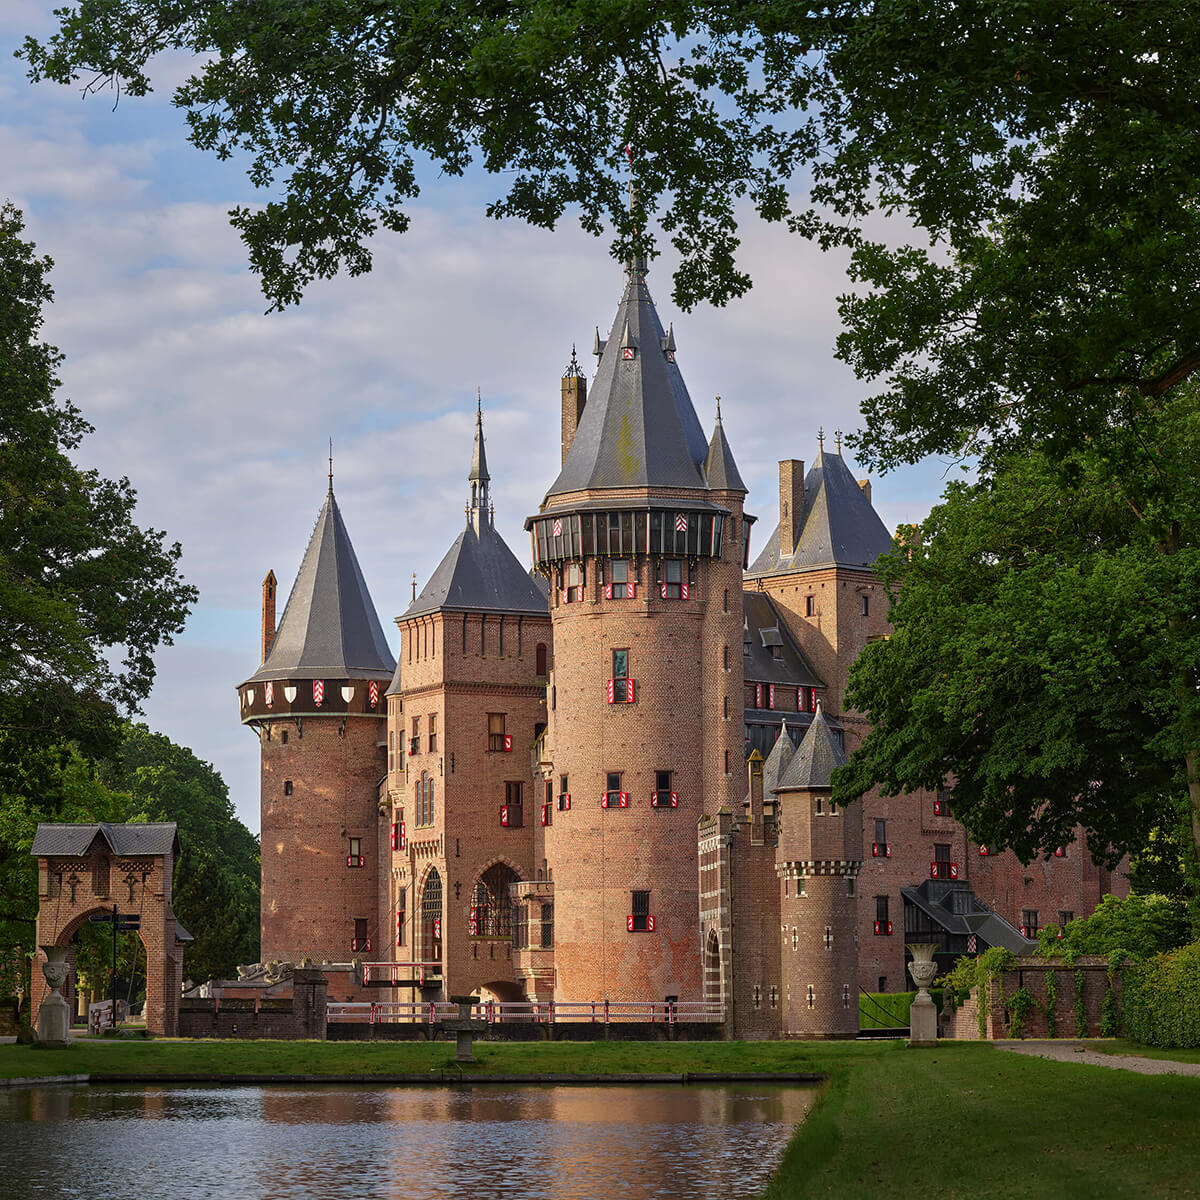 Castle de Haar from the garden